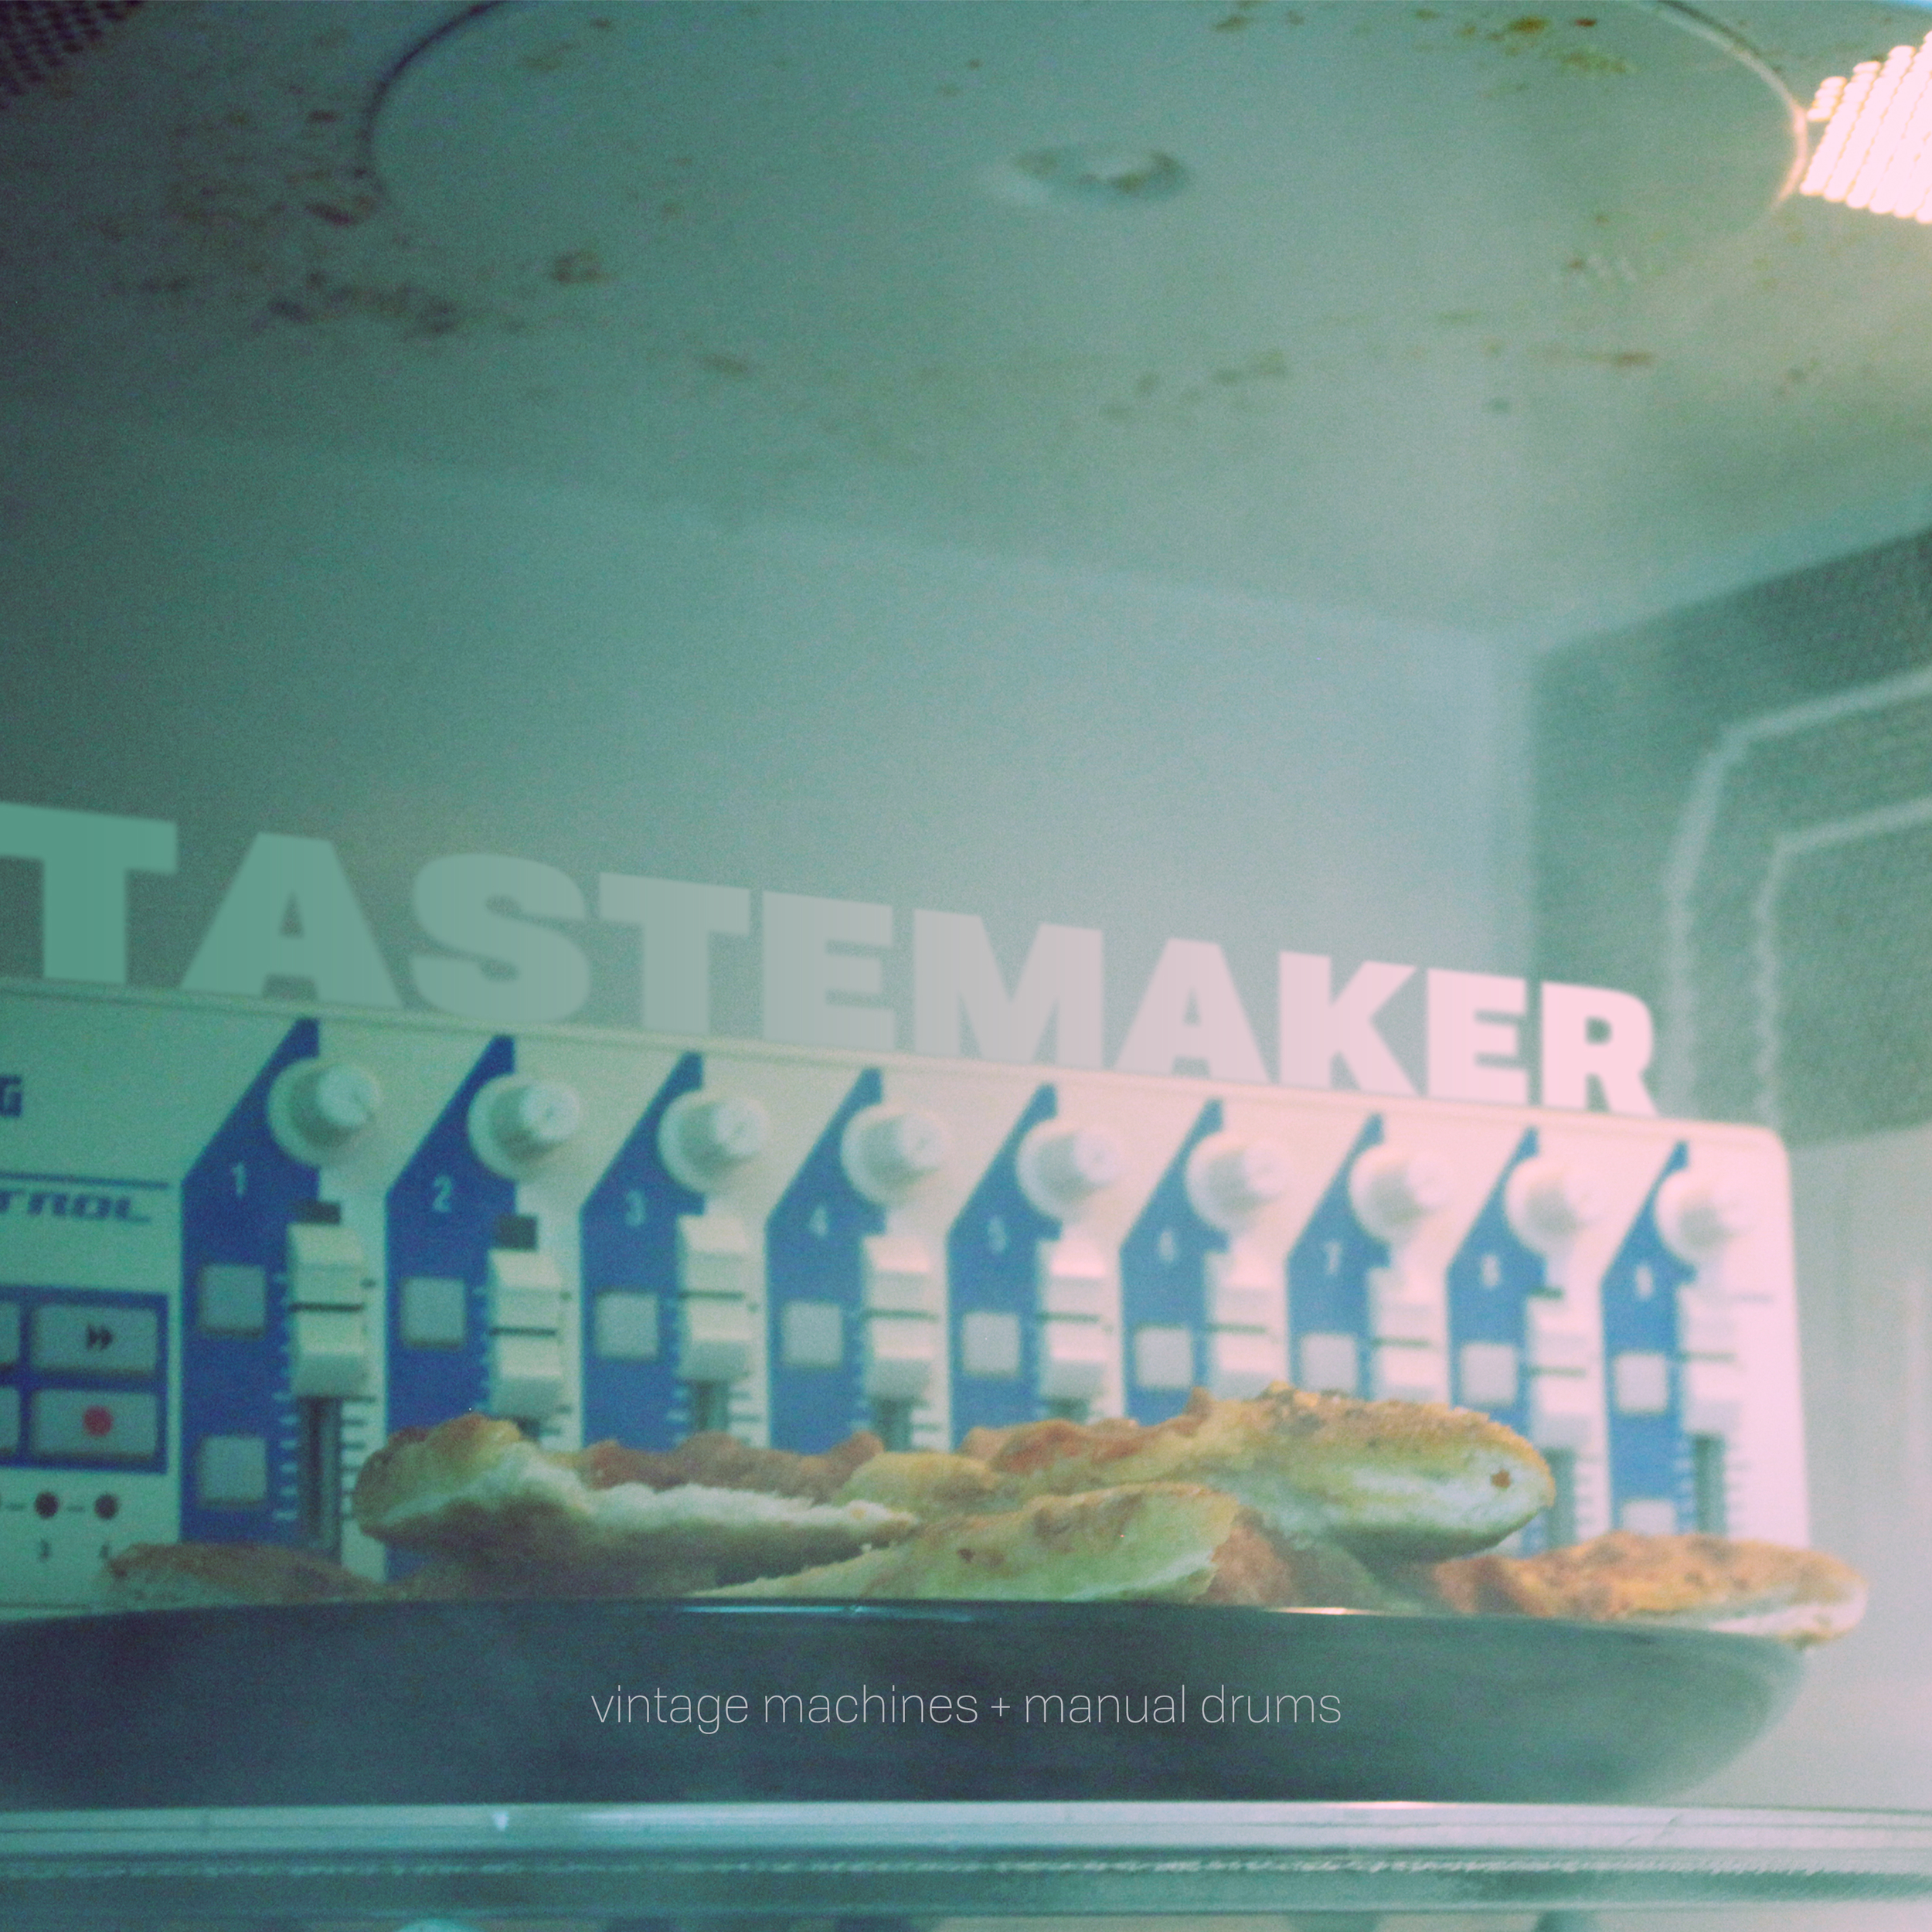 tastemakers+vol+1+artwork+2.jpg